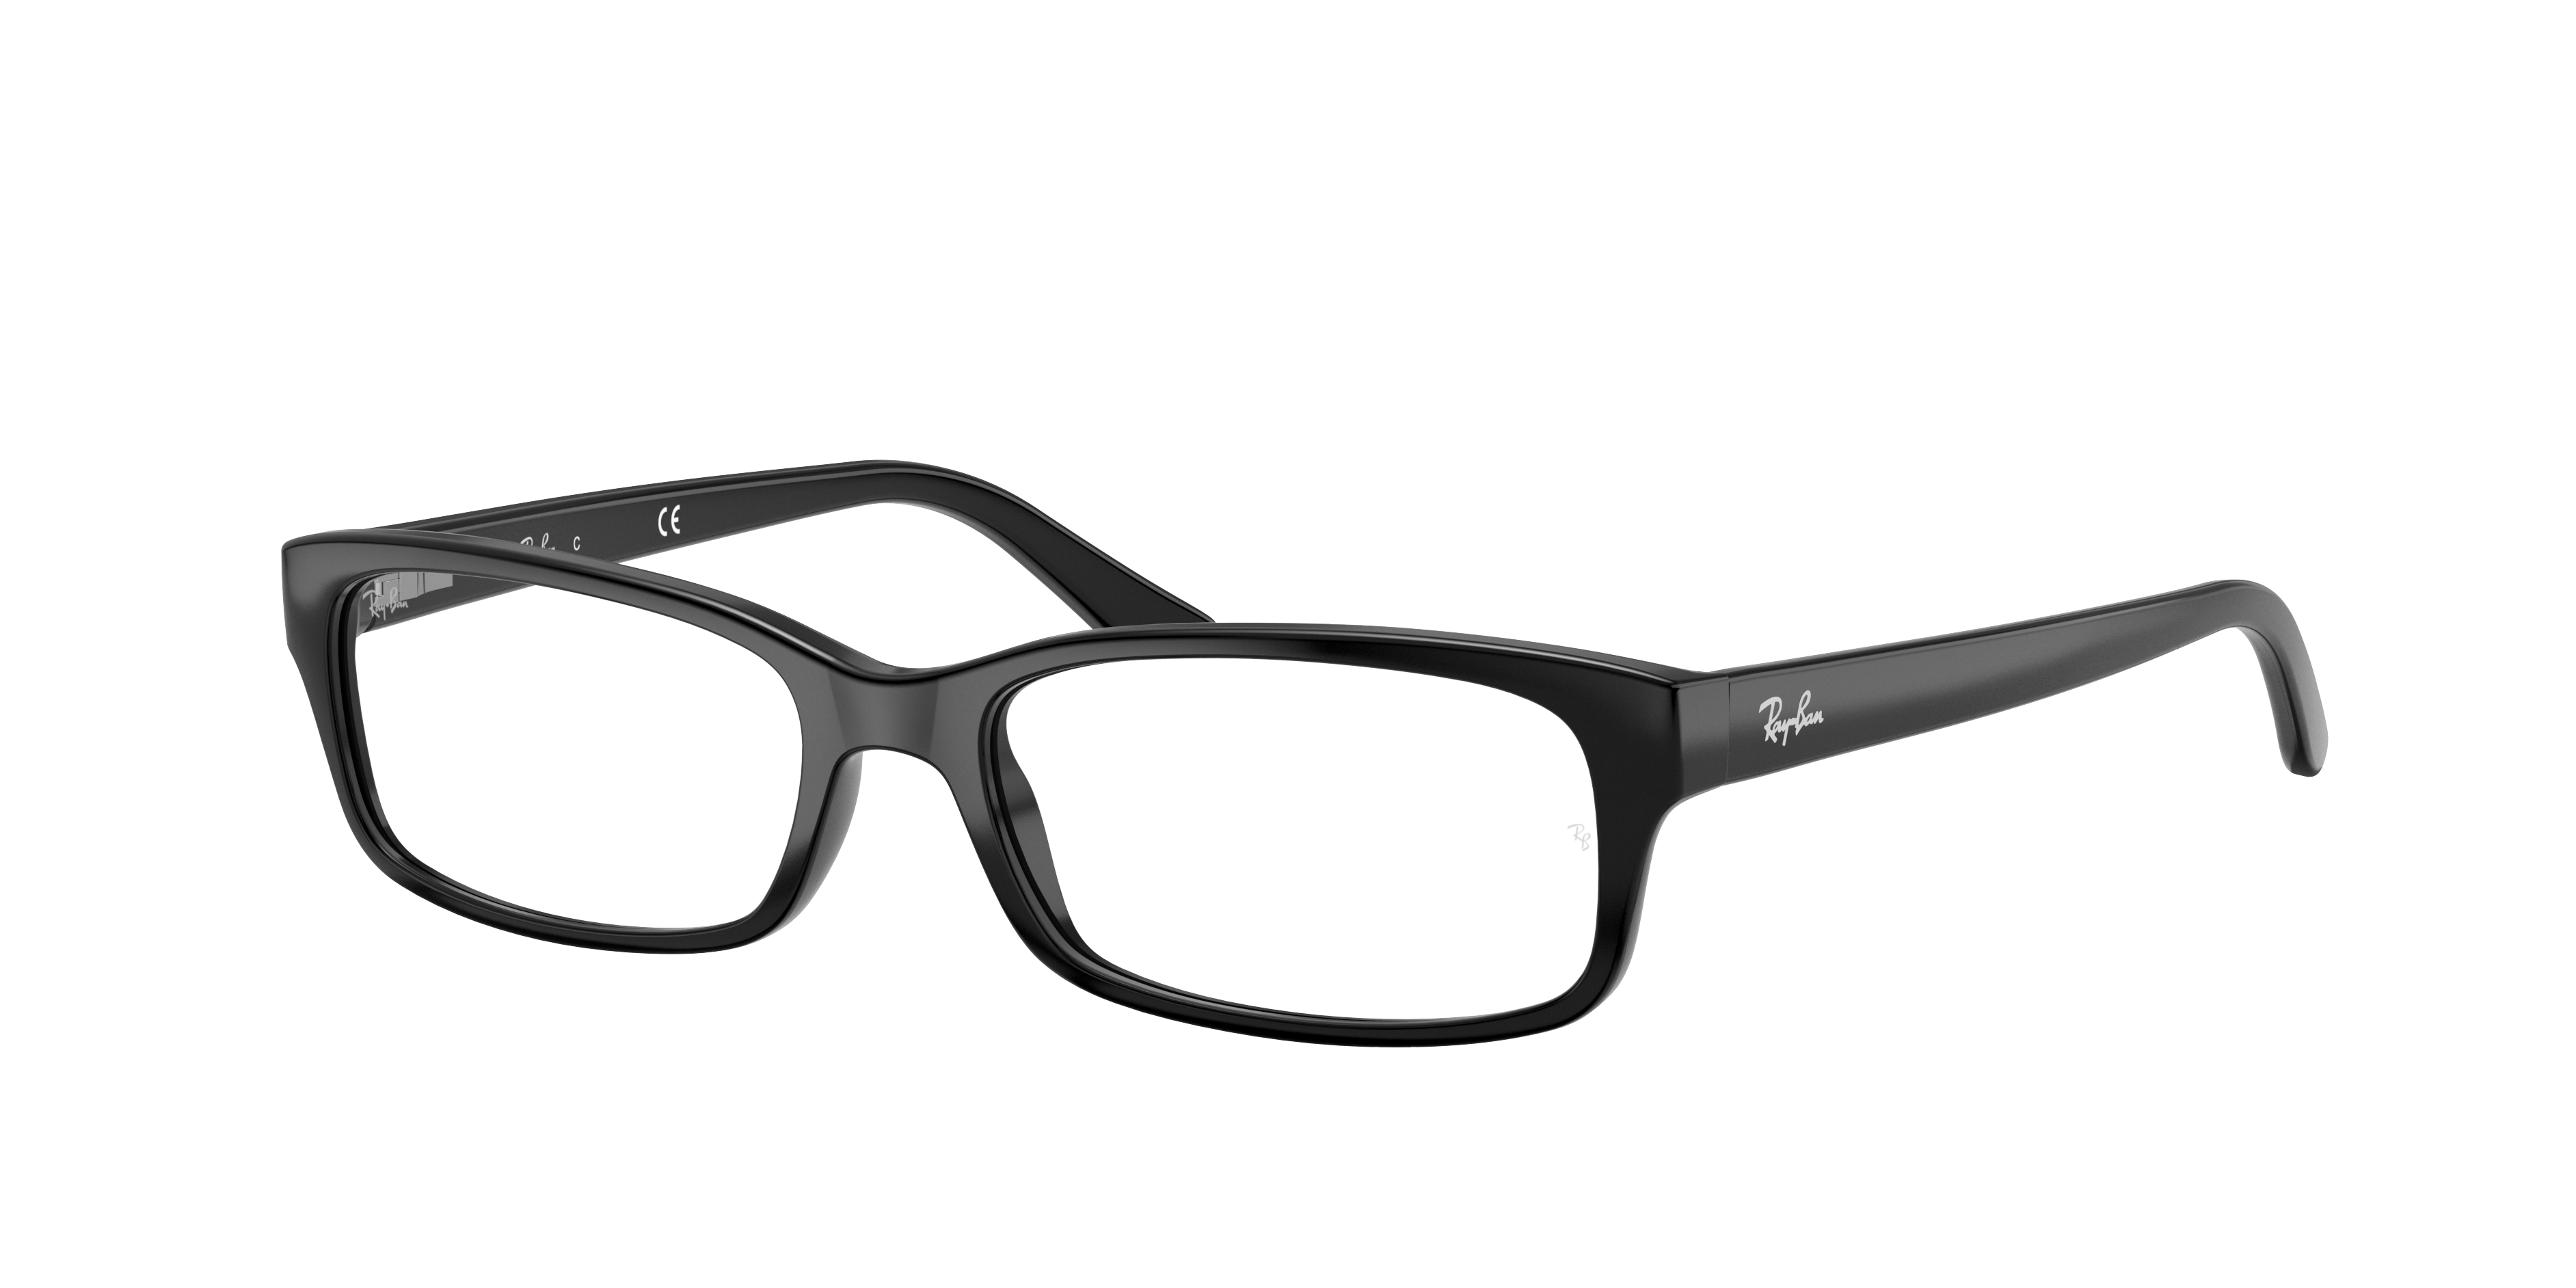 Ray-Ban RB5187 Optics Black Eyeglasses | Glasses.com® | Free Shipping